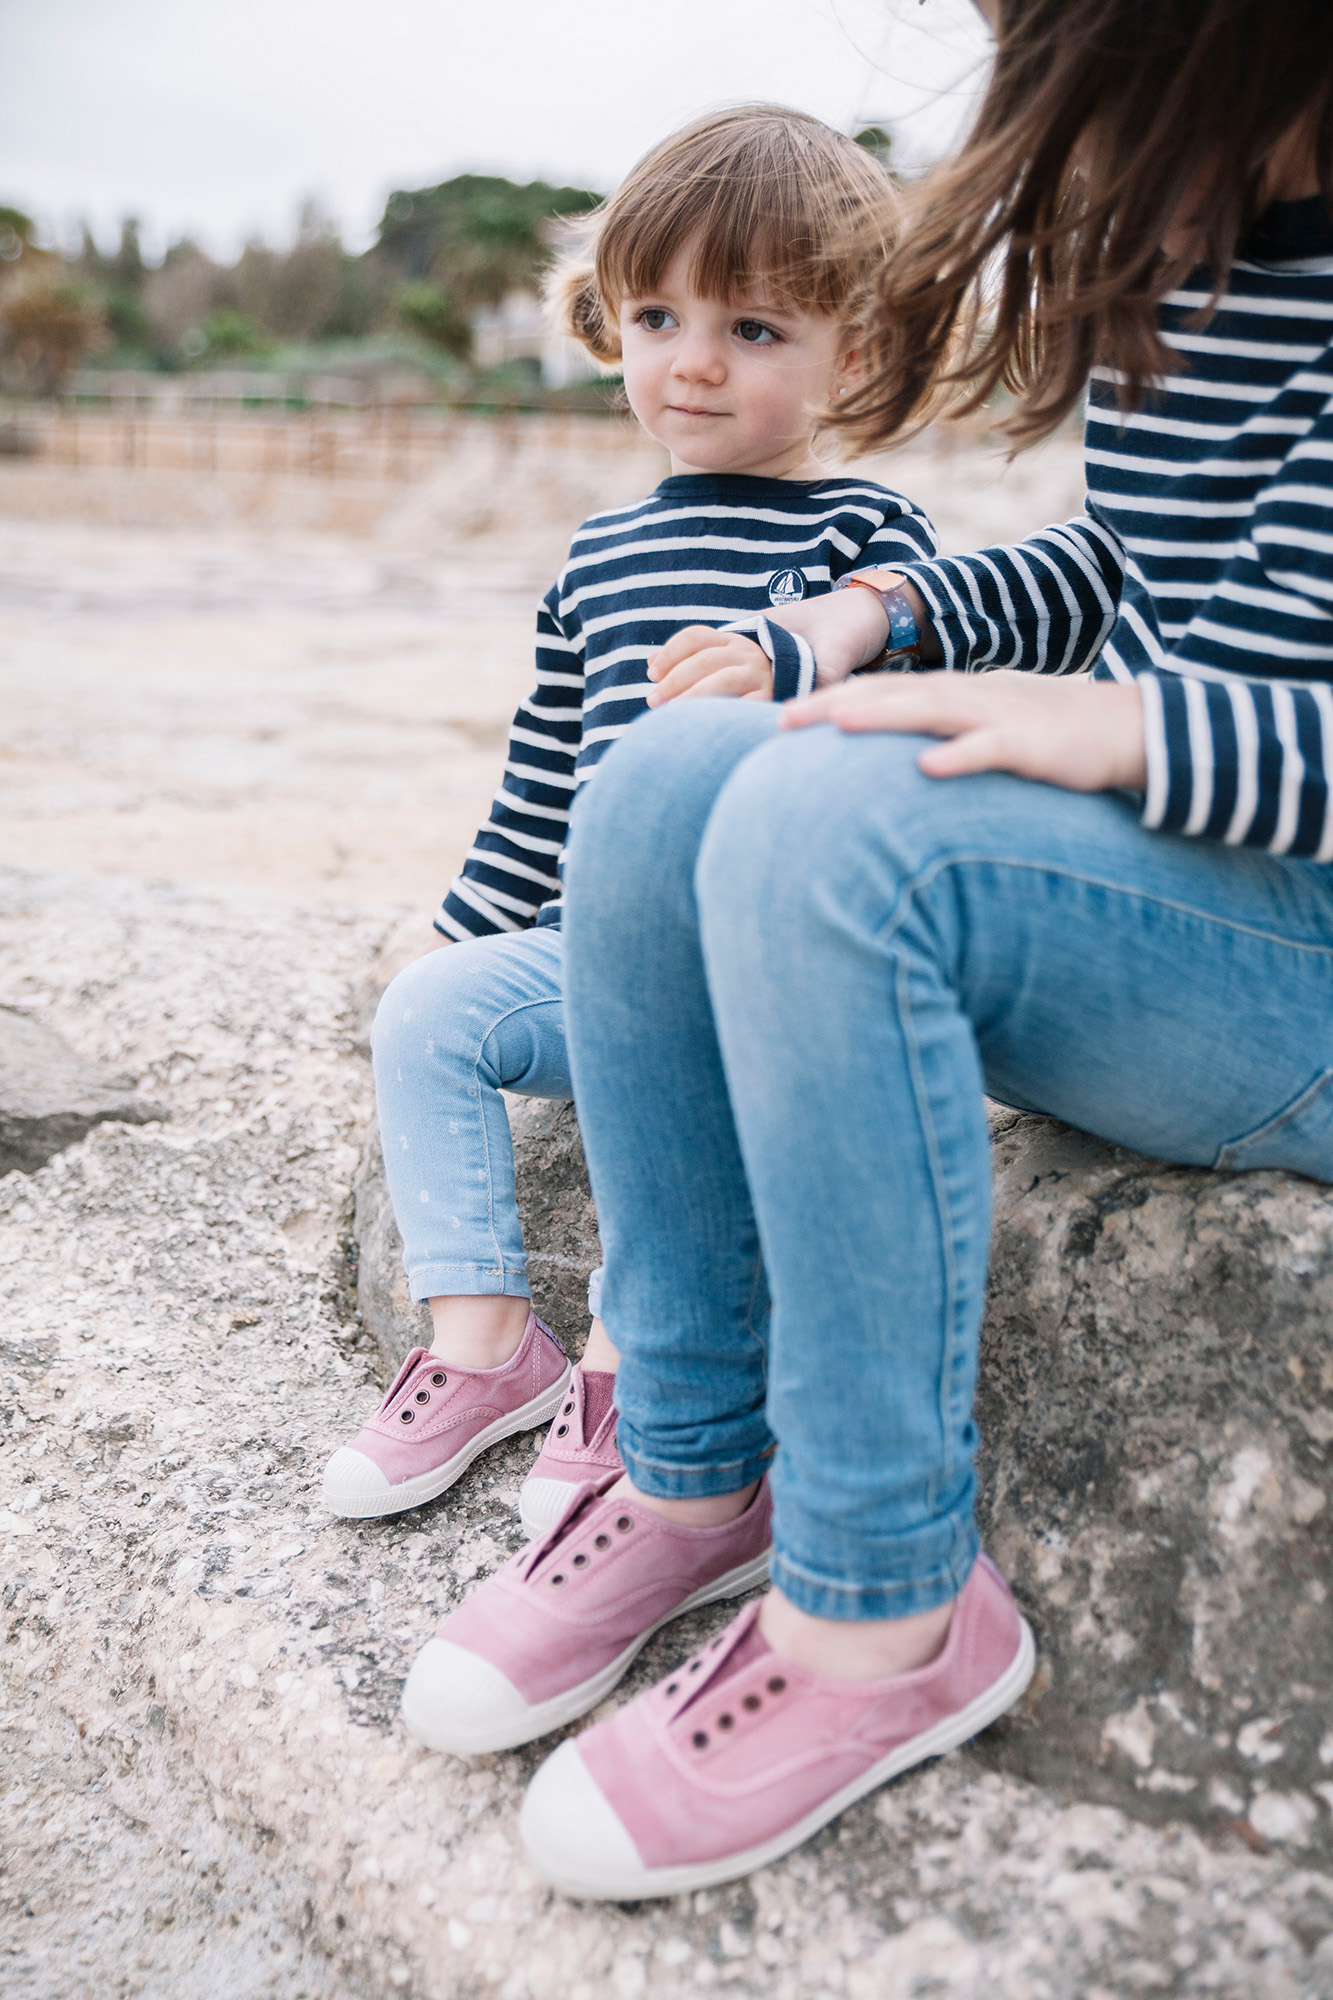 Natural World Eco - 😍Presume de calzado sostenible en familia ¿Sabías que  puedes encontrar modelos iguales en hombre, mujer y niños?👪 Y si te  suscribes a la newsletter recibirás un 10% de